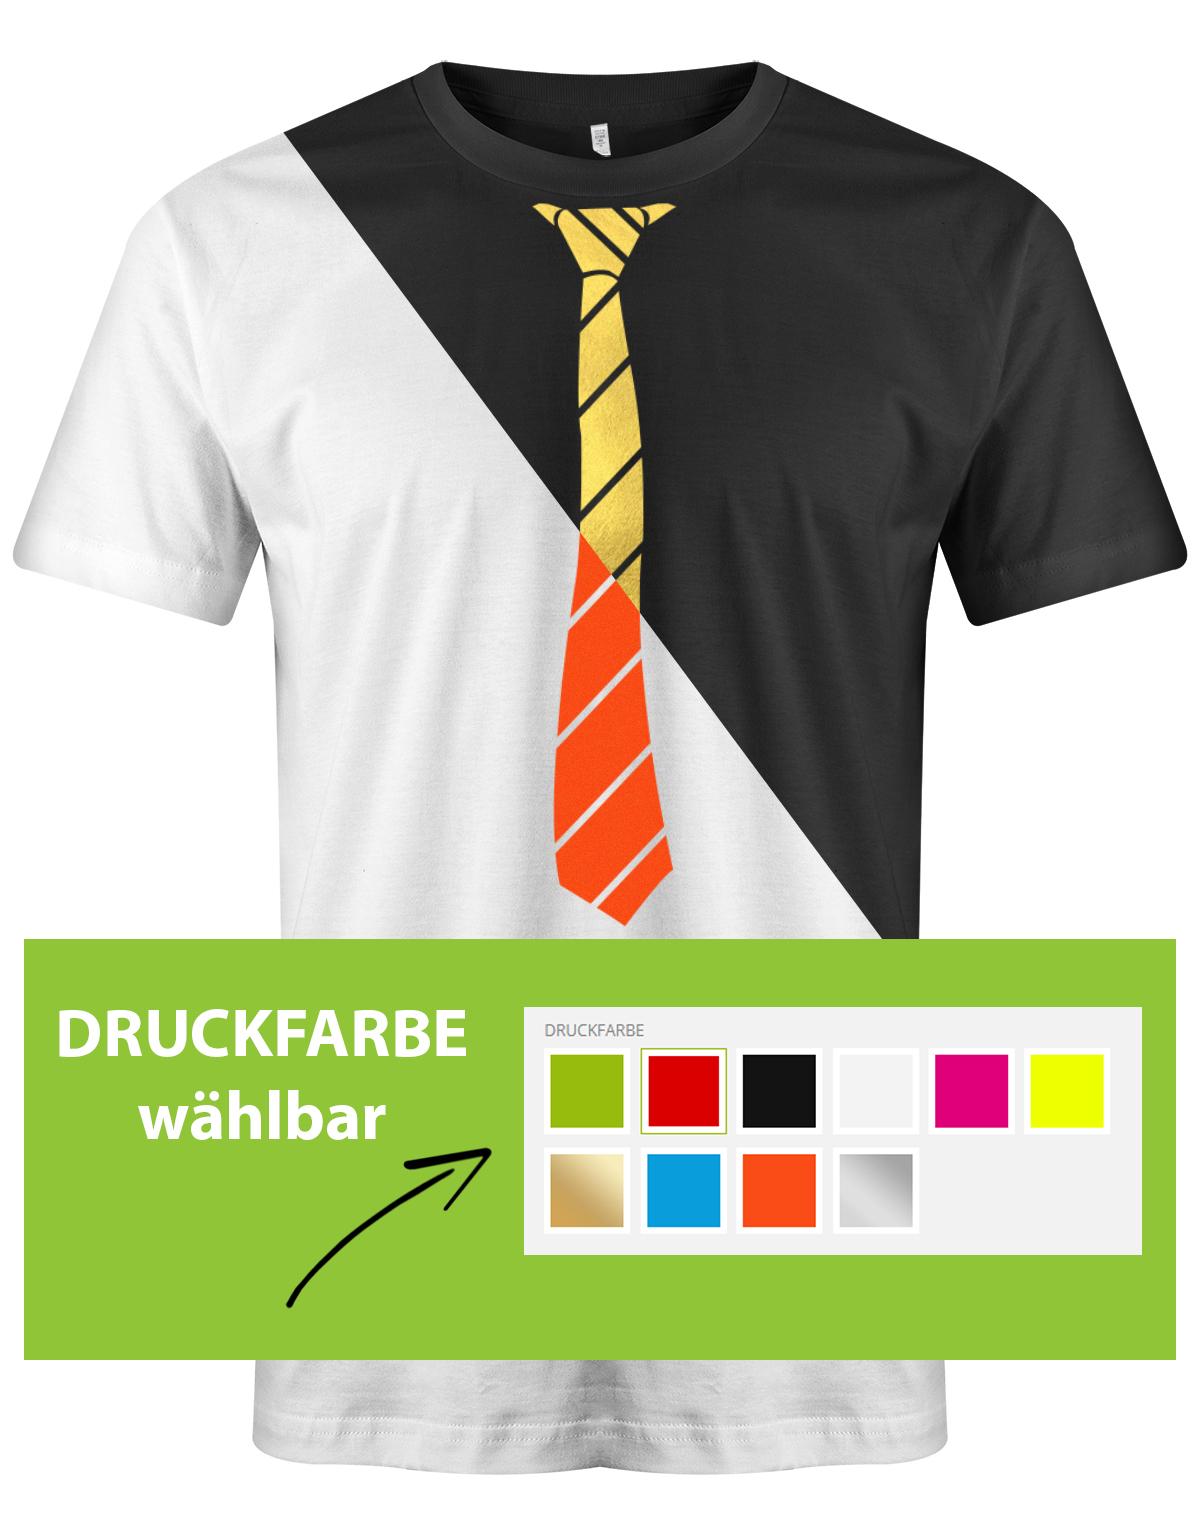 Krawatte-buisness-Herren-Shirt-JGA-Druckfarbe-w-hlbar